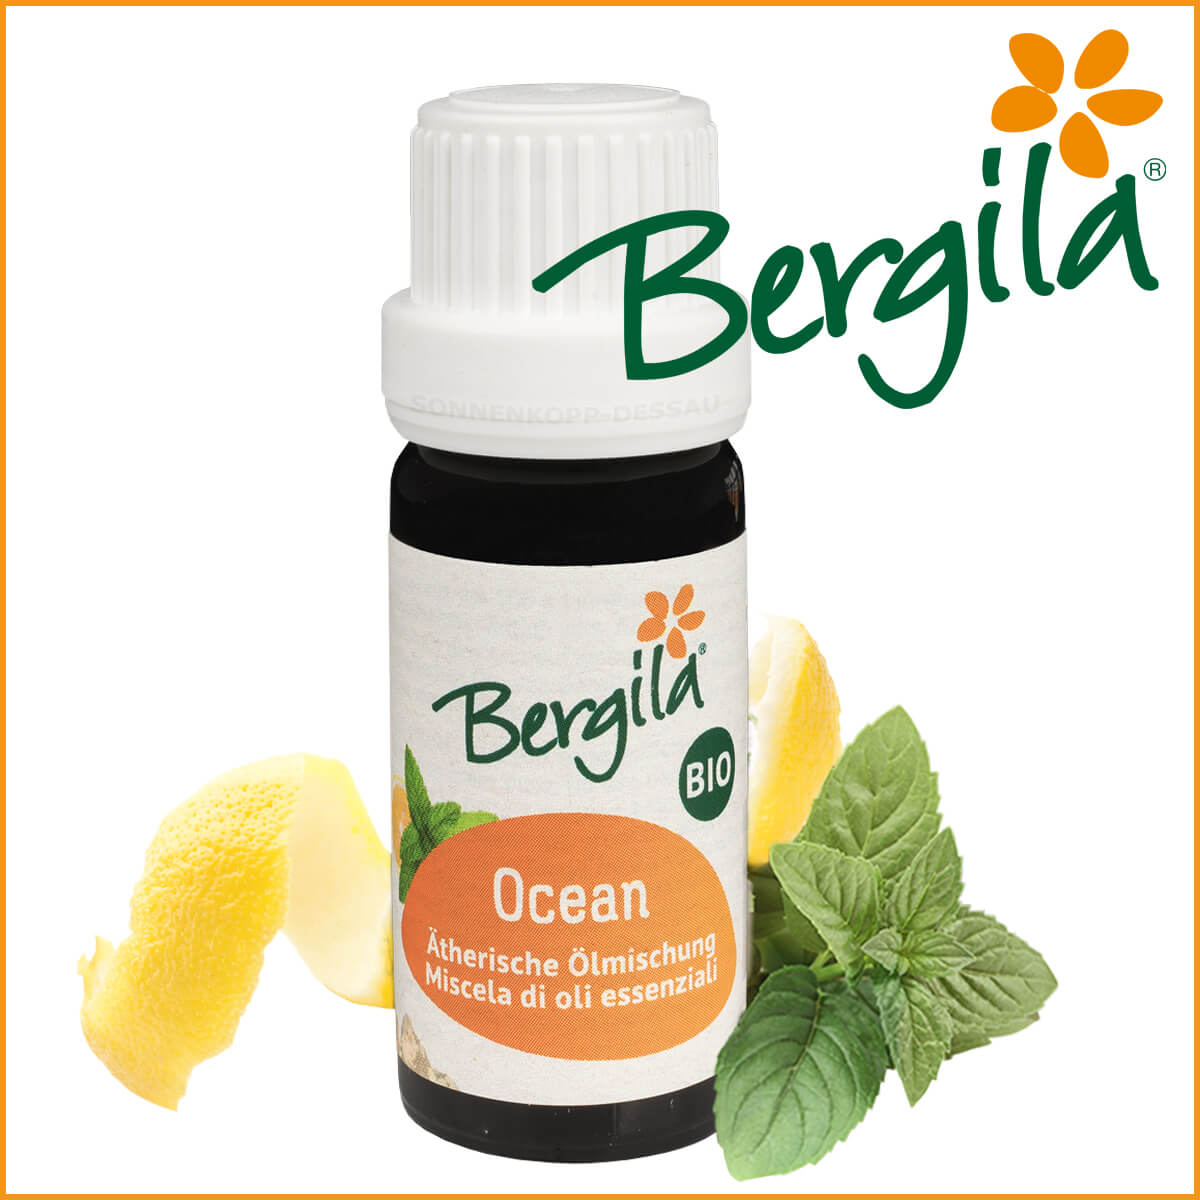 OCEAN - Bergila ® BIO ätherische Öl Mischung - Ocean Öl TIROL - frisch